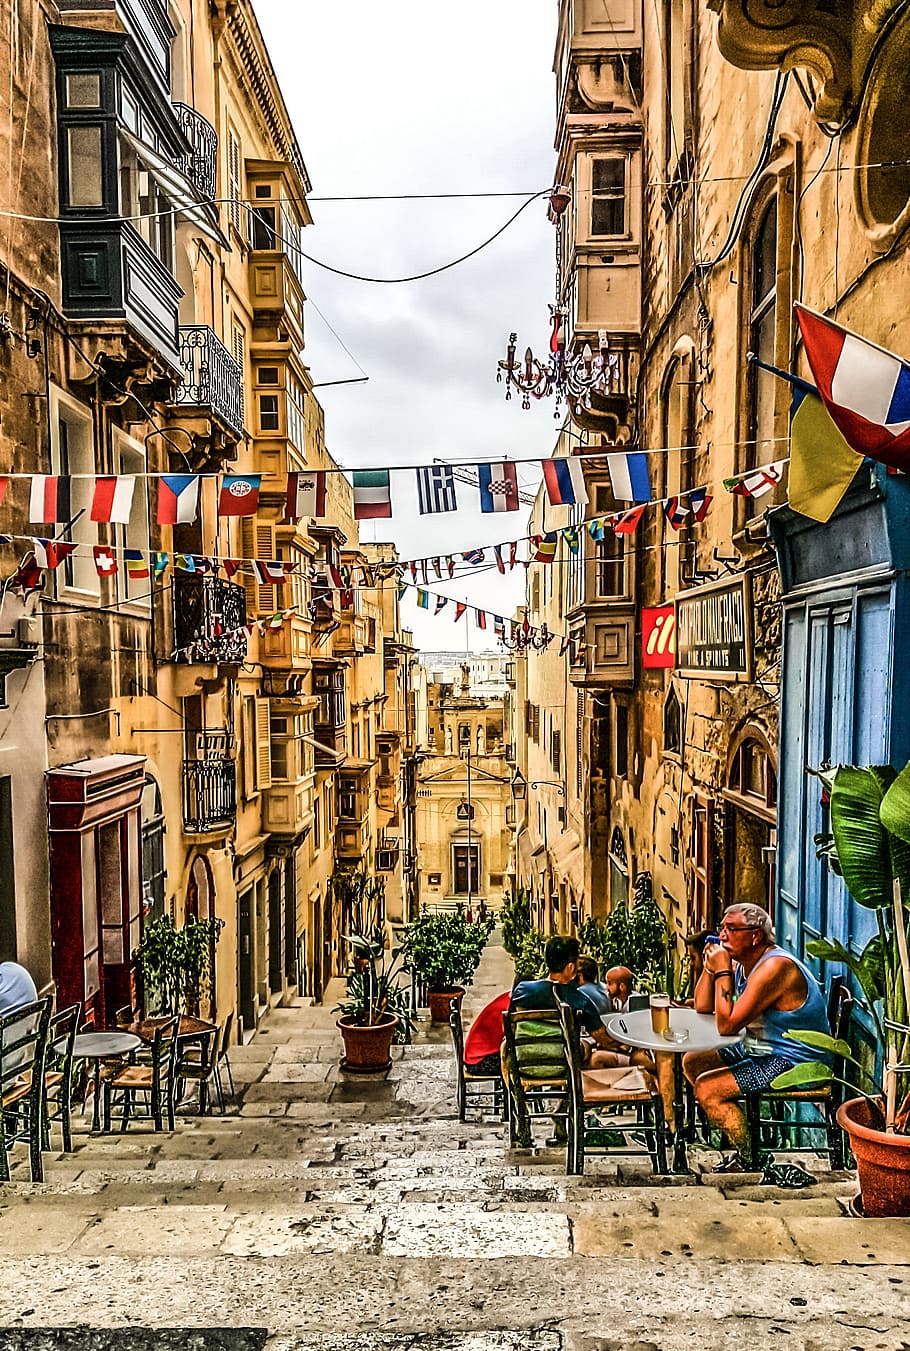 bunting of flags hanging between buildings, Malta, Island, Mediterranean